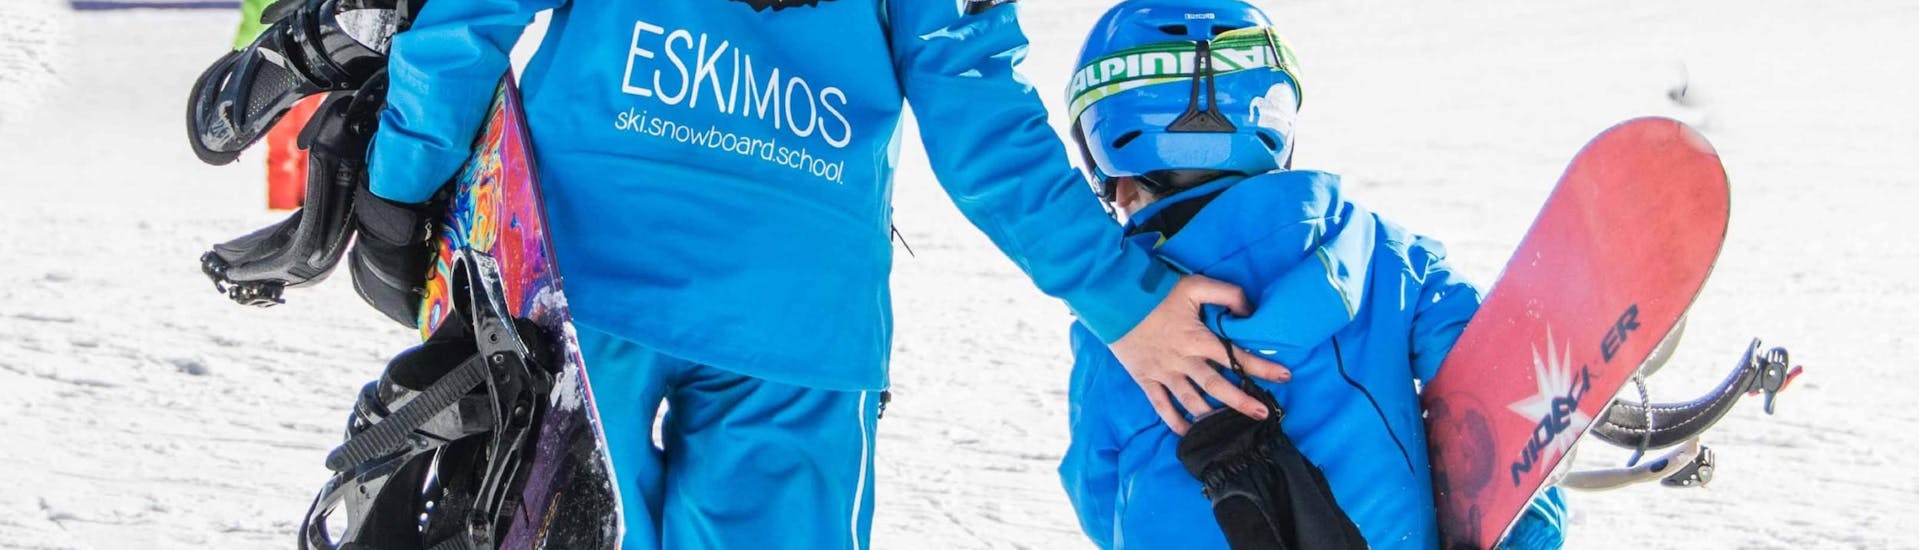 Lezioni di Snowboard a partire da 6 anni principianti assoluti con Ski School ESKIMOS Saas-Fee.